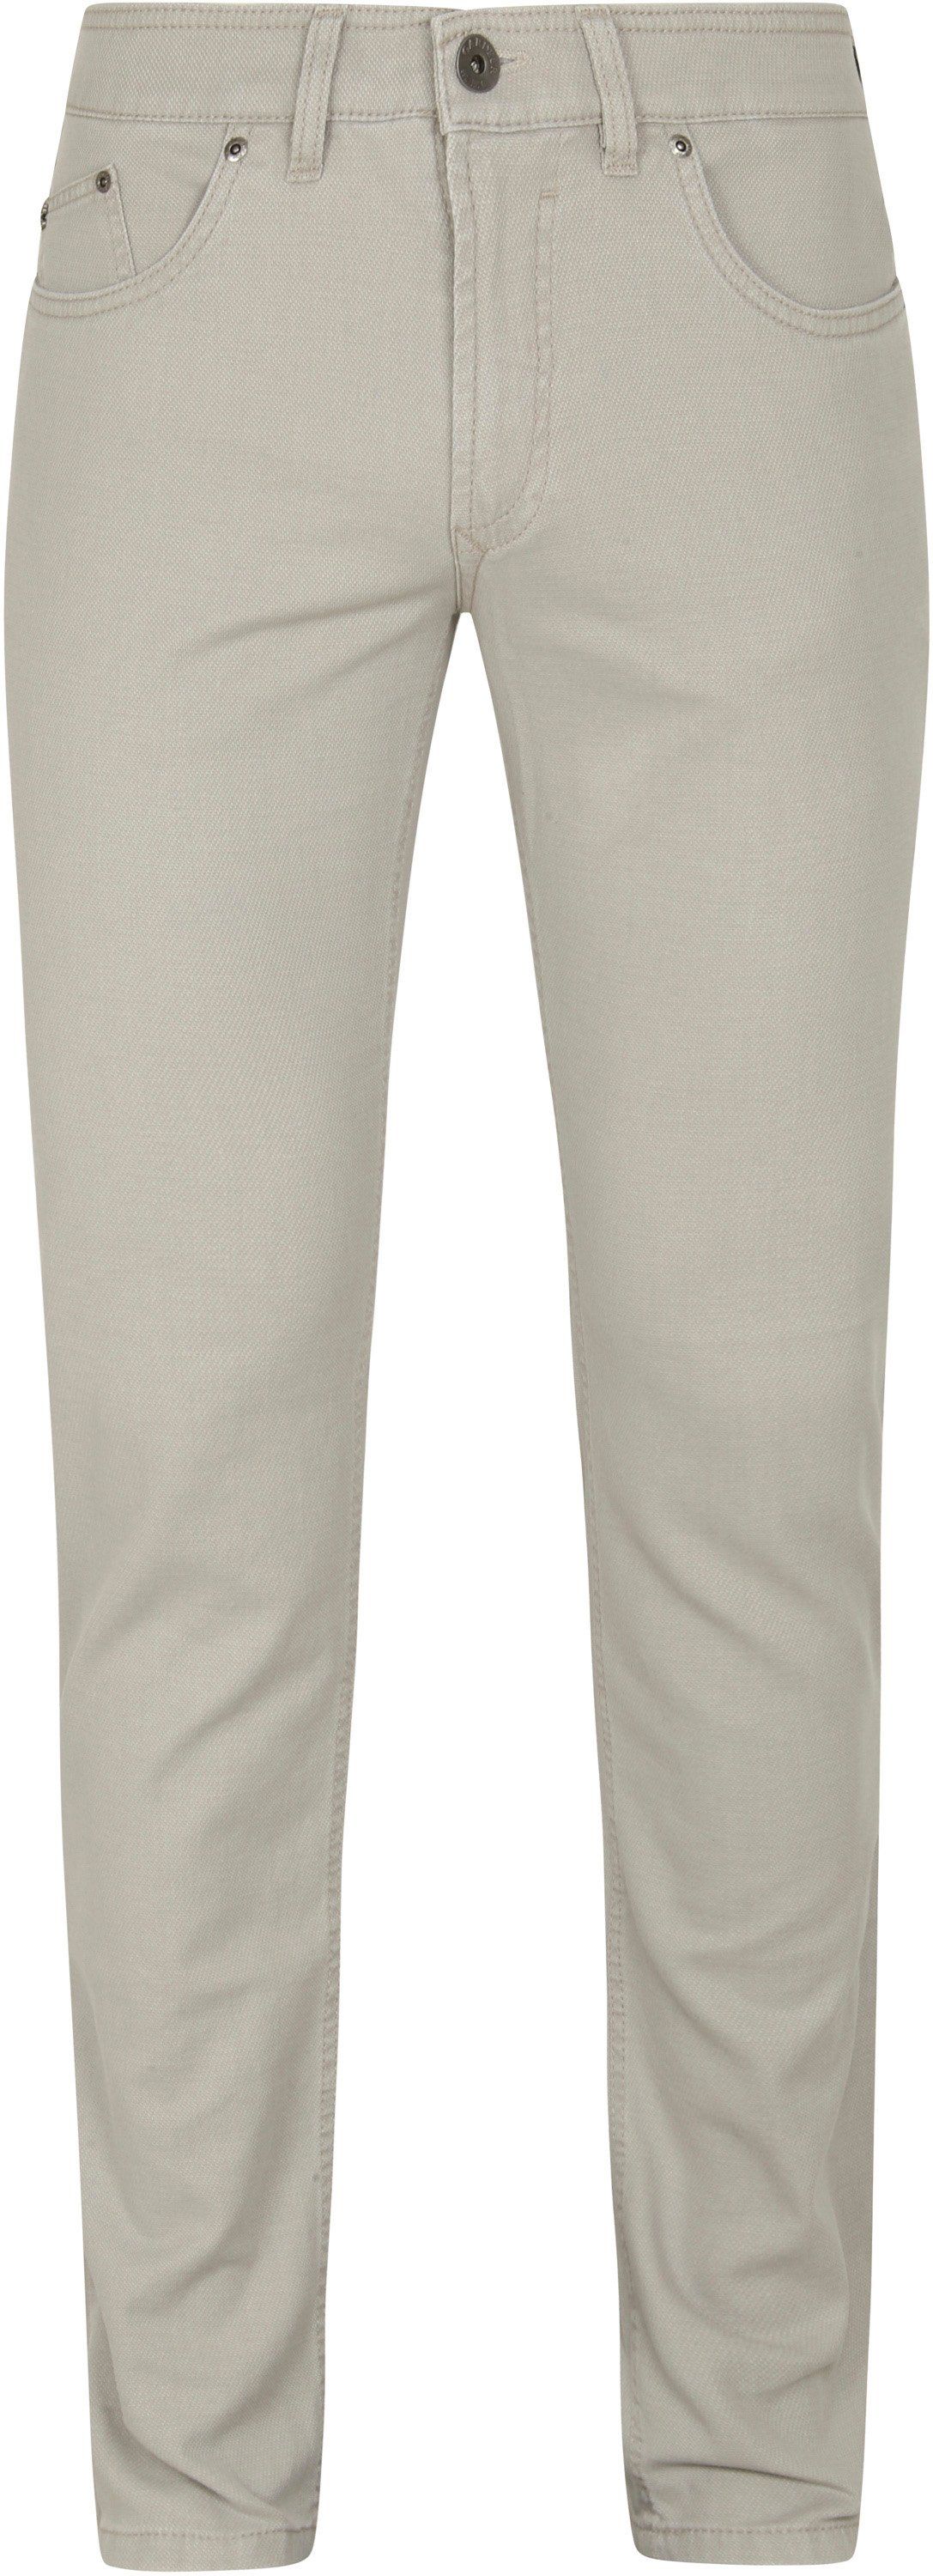 Gardeur Bill Trousers Five Pocket Light Modern Fit Beige size W 32